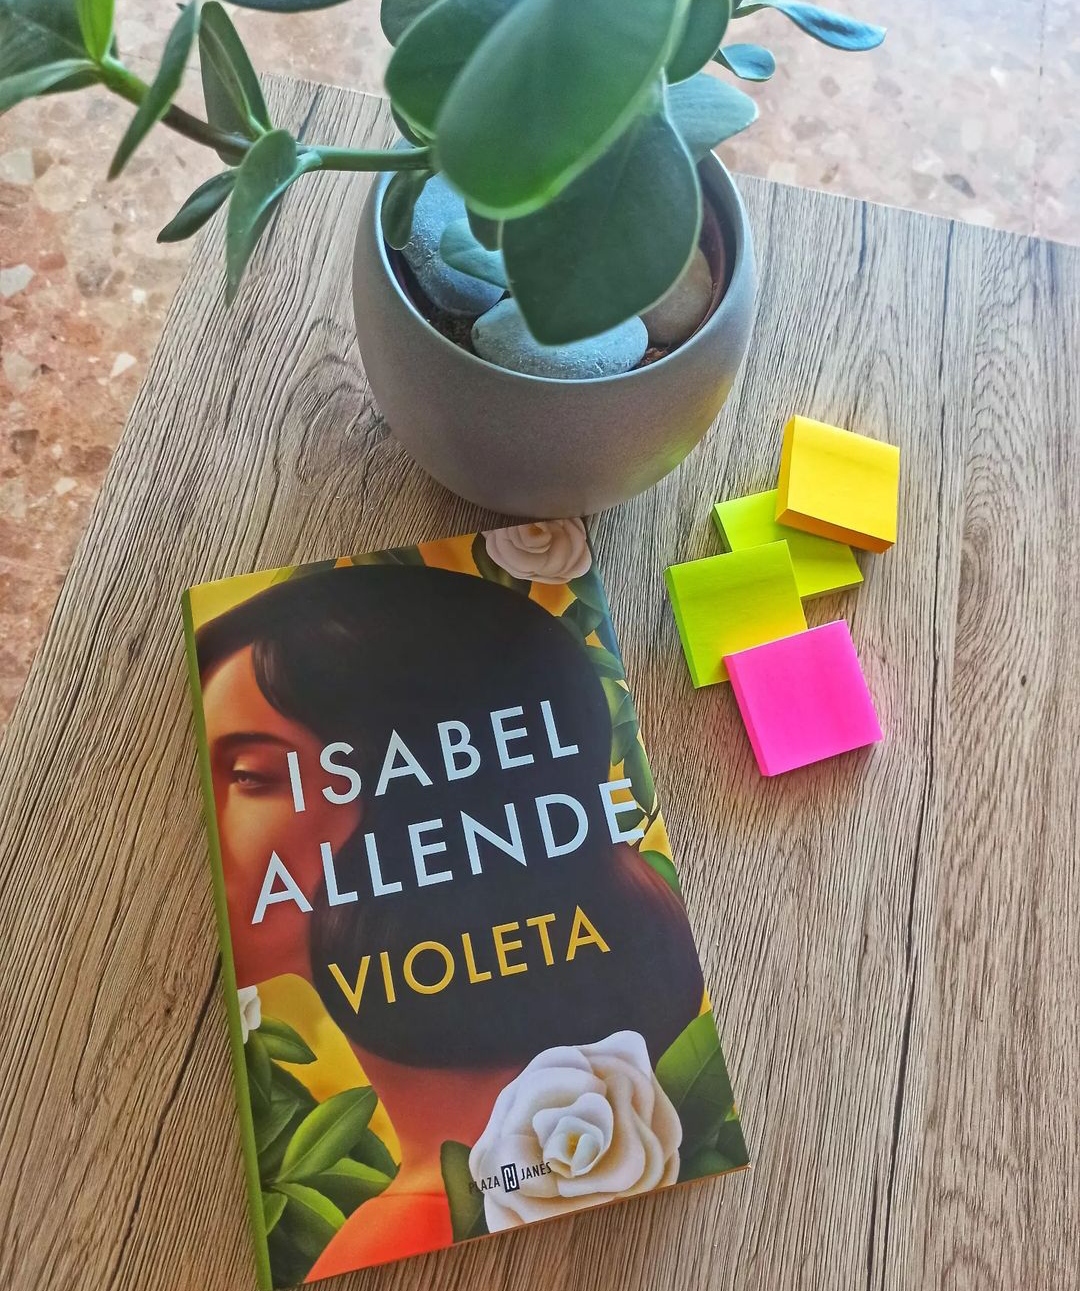 VIOLETA, de Isabel Allende.